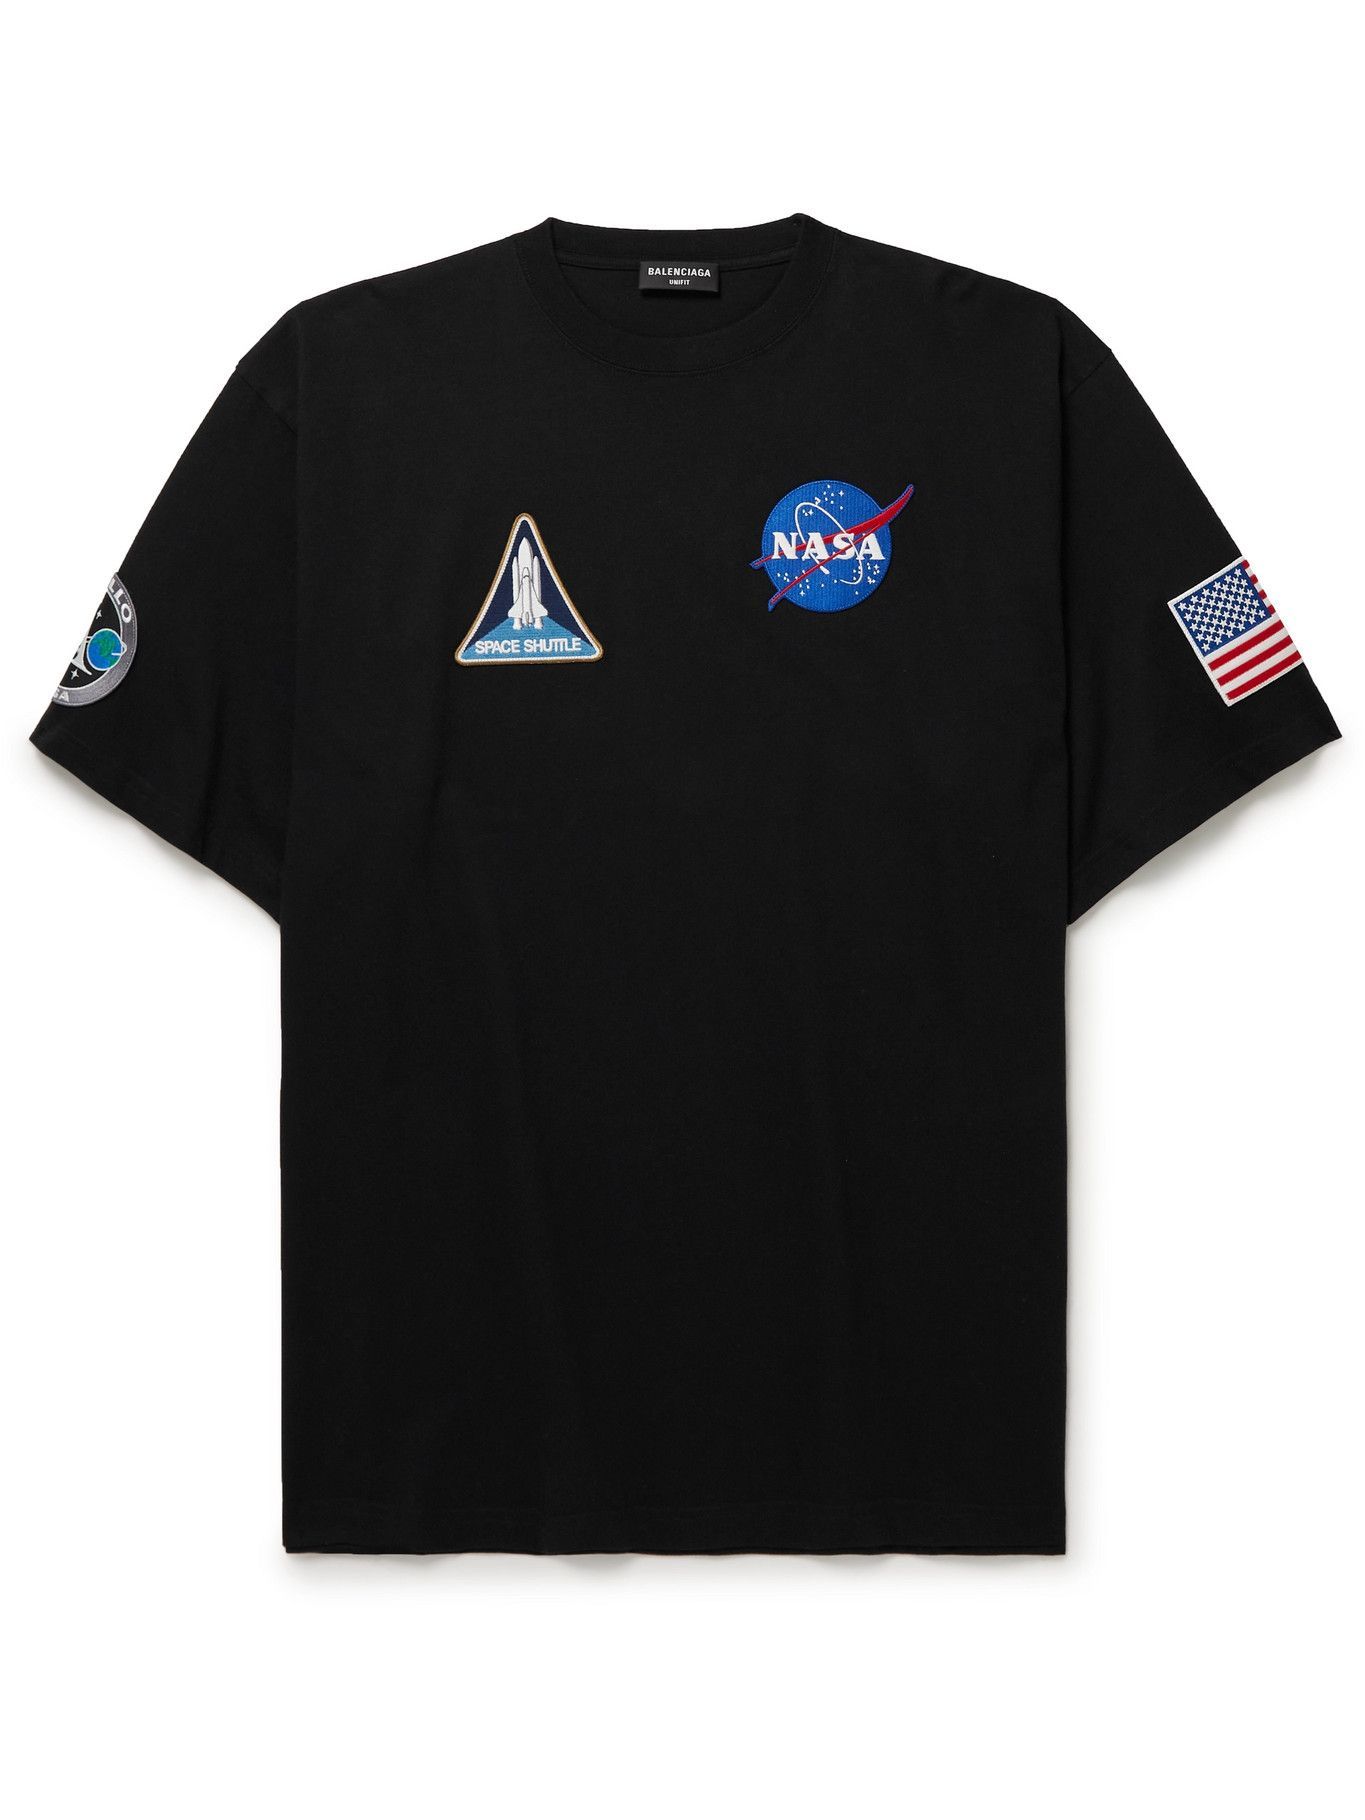 BALENCIAGA  NASAコラボ  Tシャツ